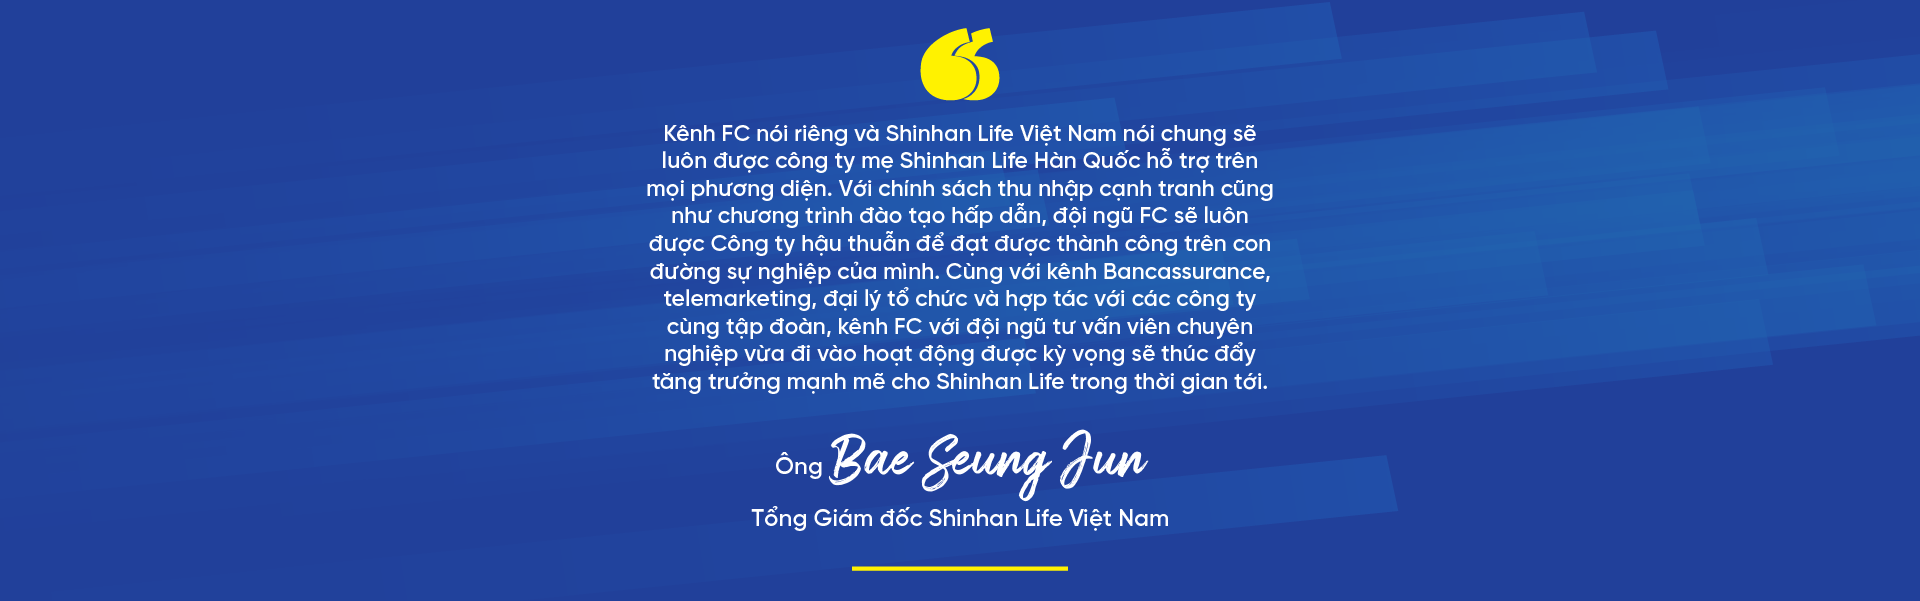 Shinhan Life Việt Nam sẵn sàng bước vào giai đoạn tăng trưởng bứt phá - Ảnh 6